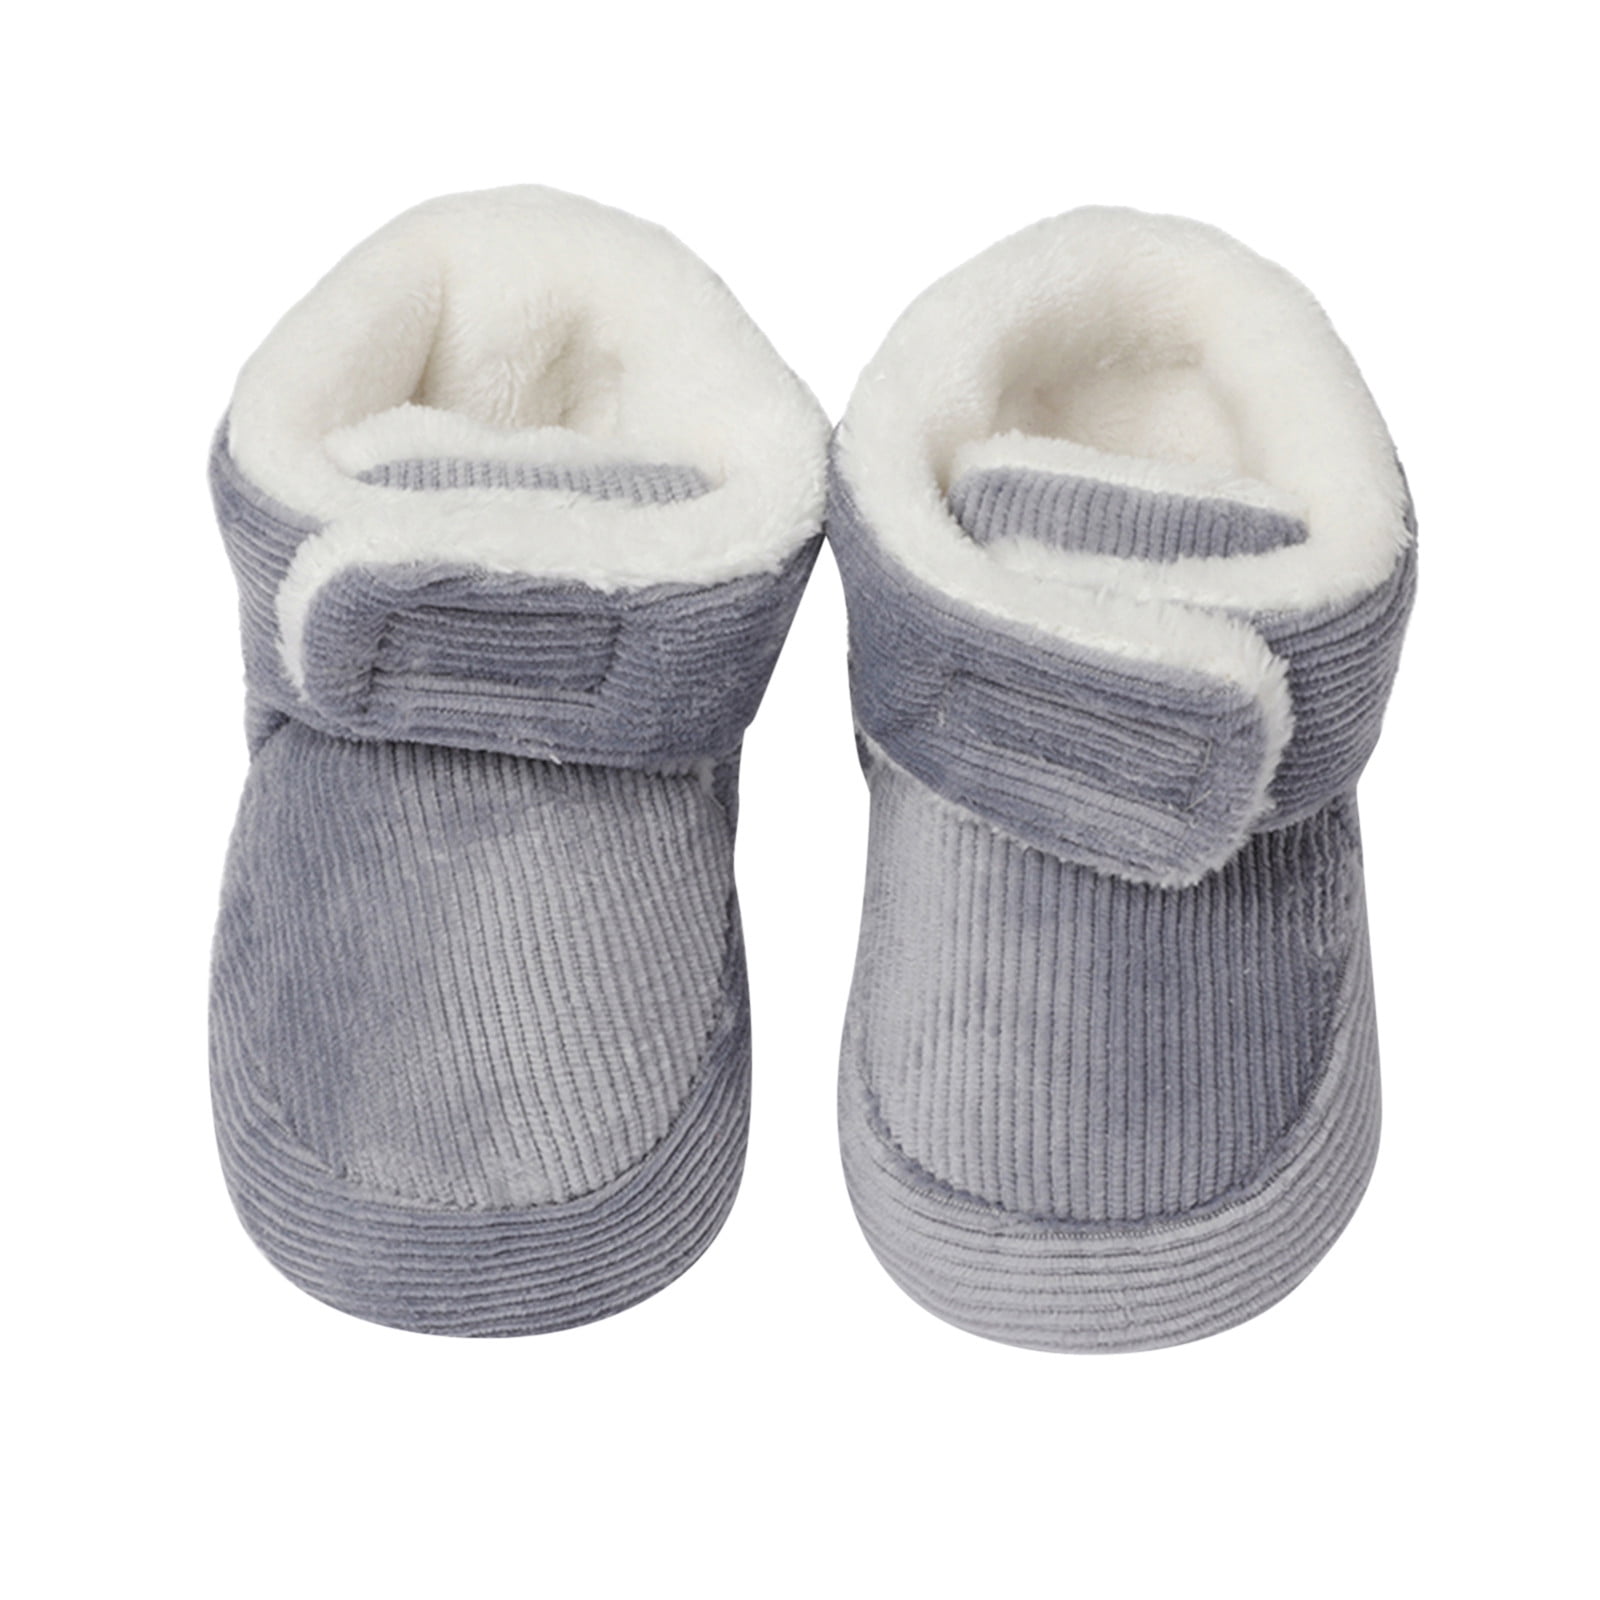 Gubotare Winter Booties For Baby Girl Baby Fleece Booties Newborn Warm Slippers Cozy Winter Boots Sock Shoes Infant Bootie,Gray Months Walmart.com